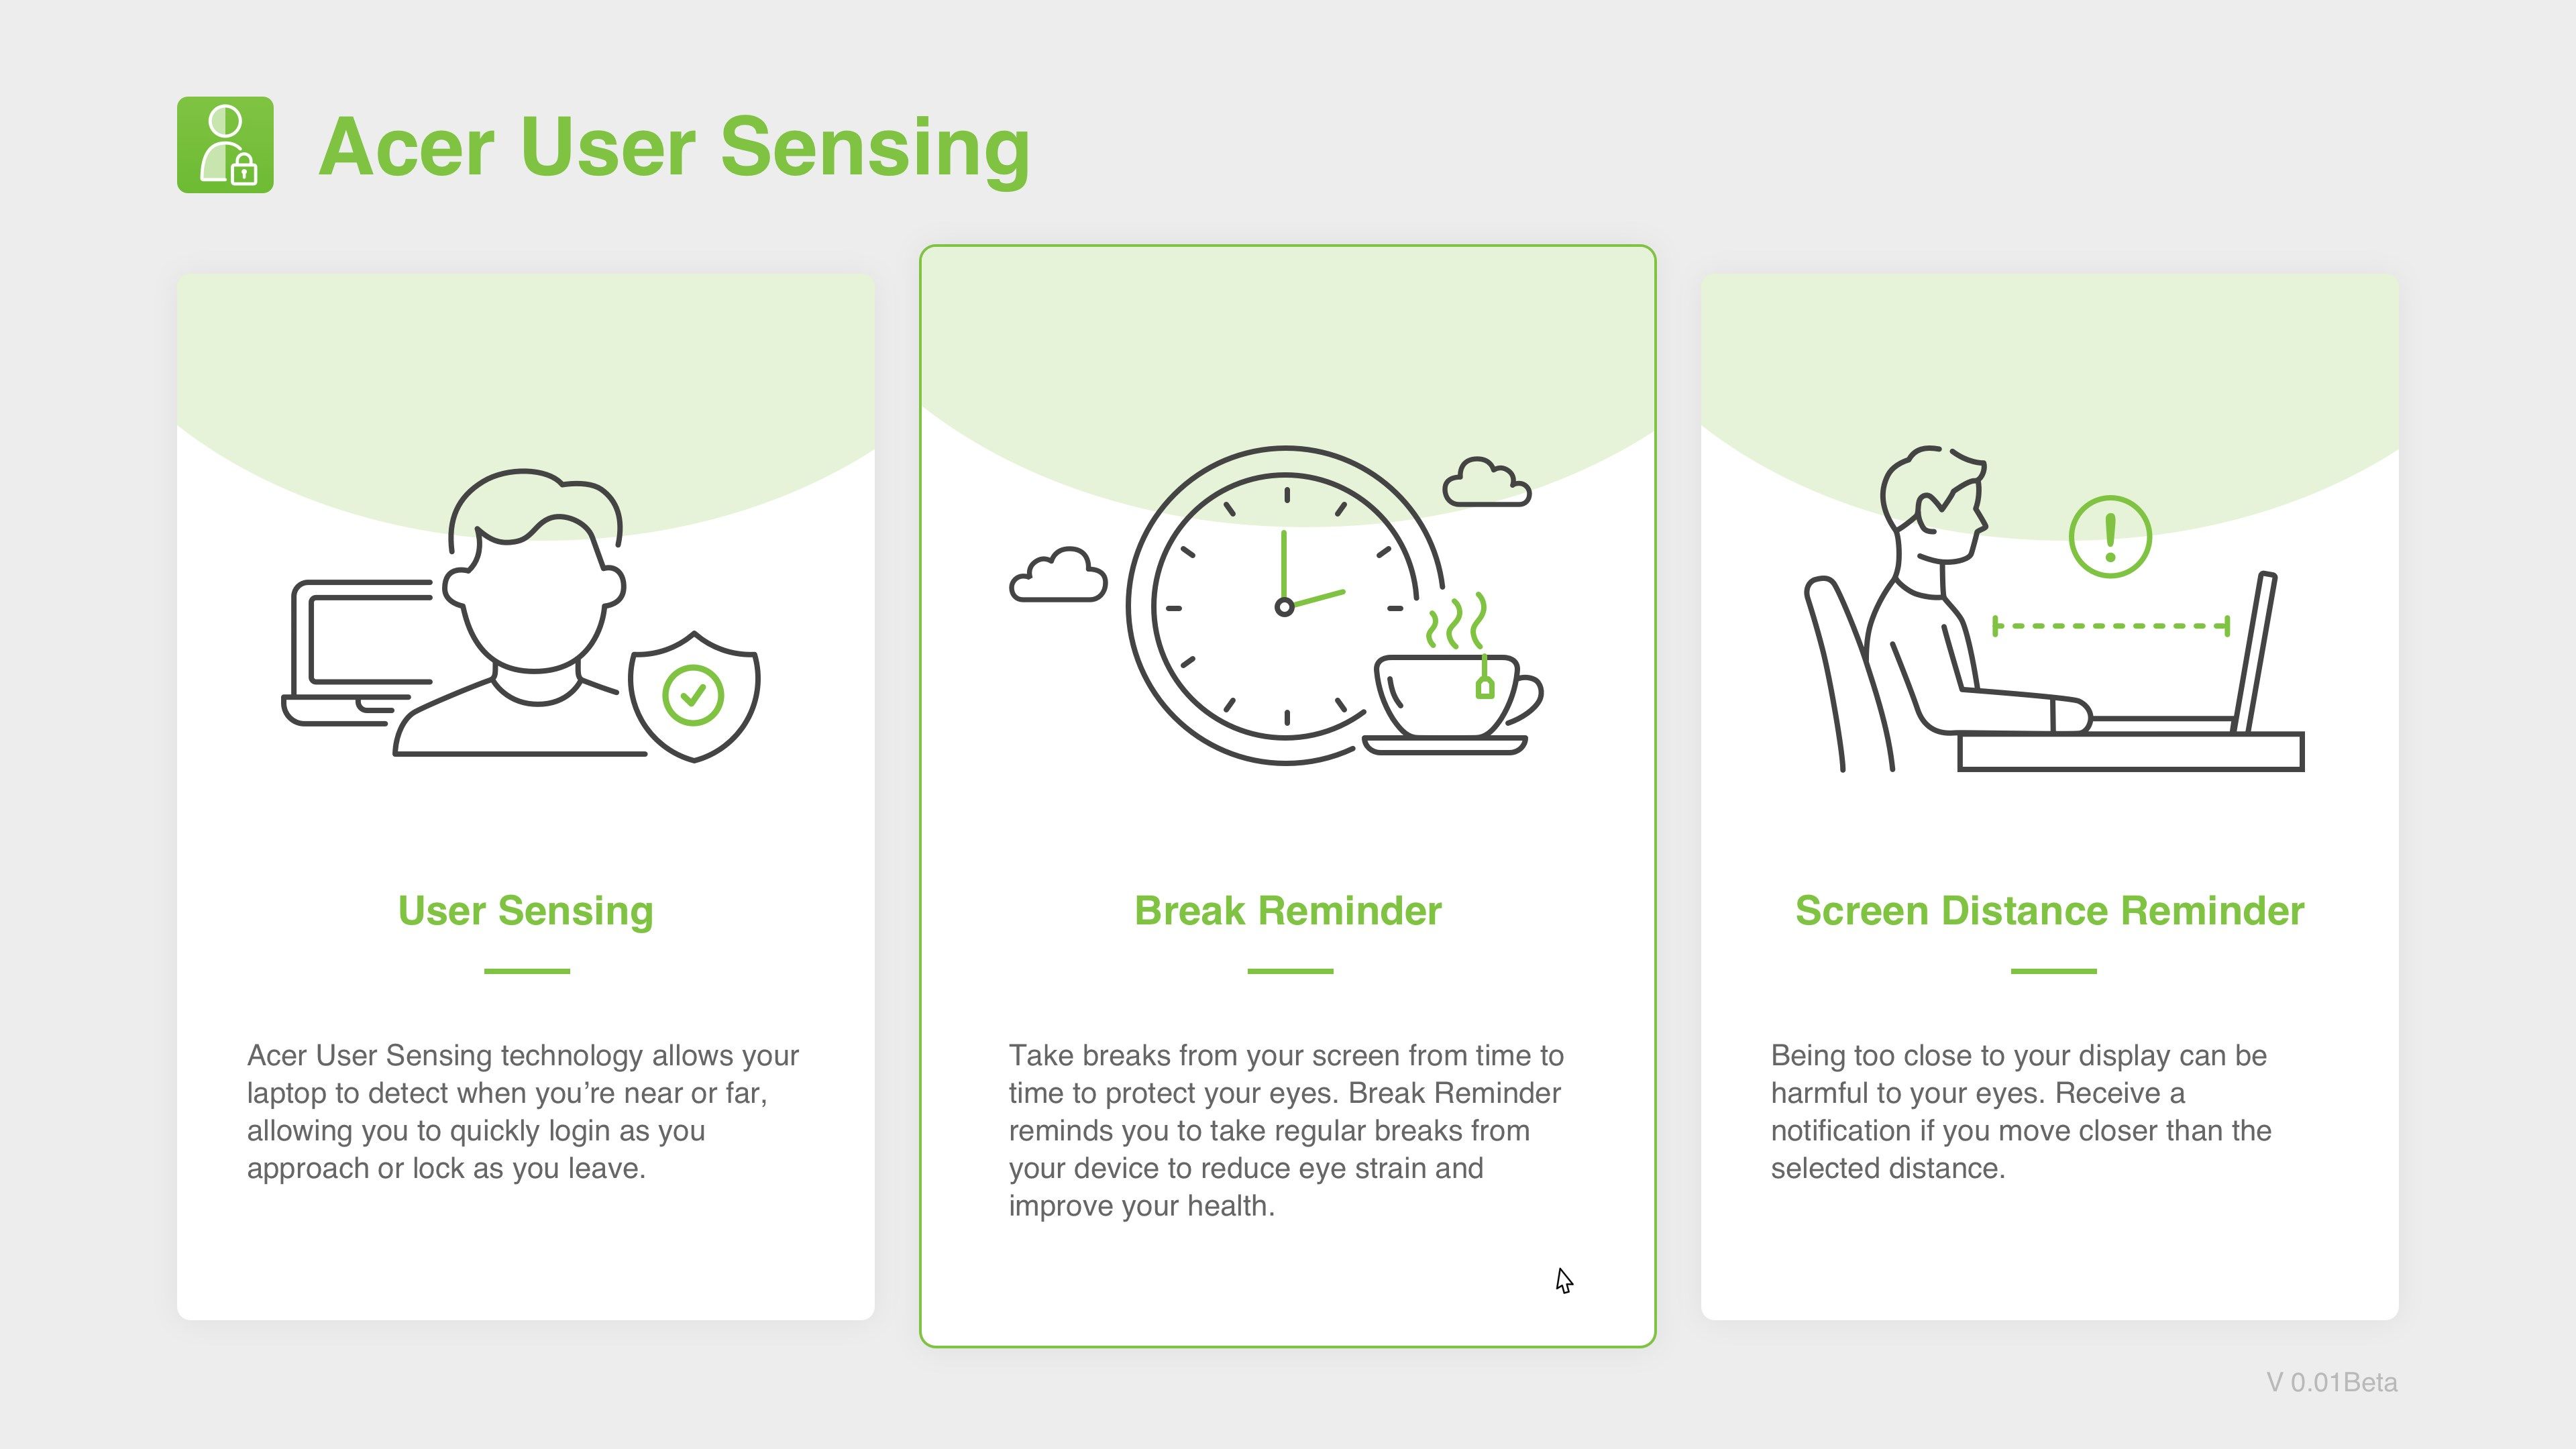 Acer User Sensing